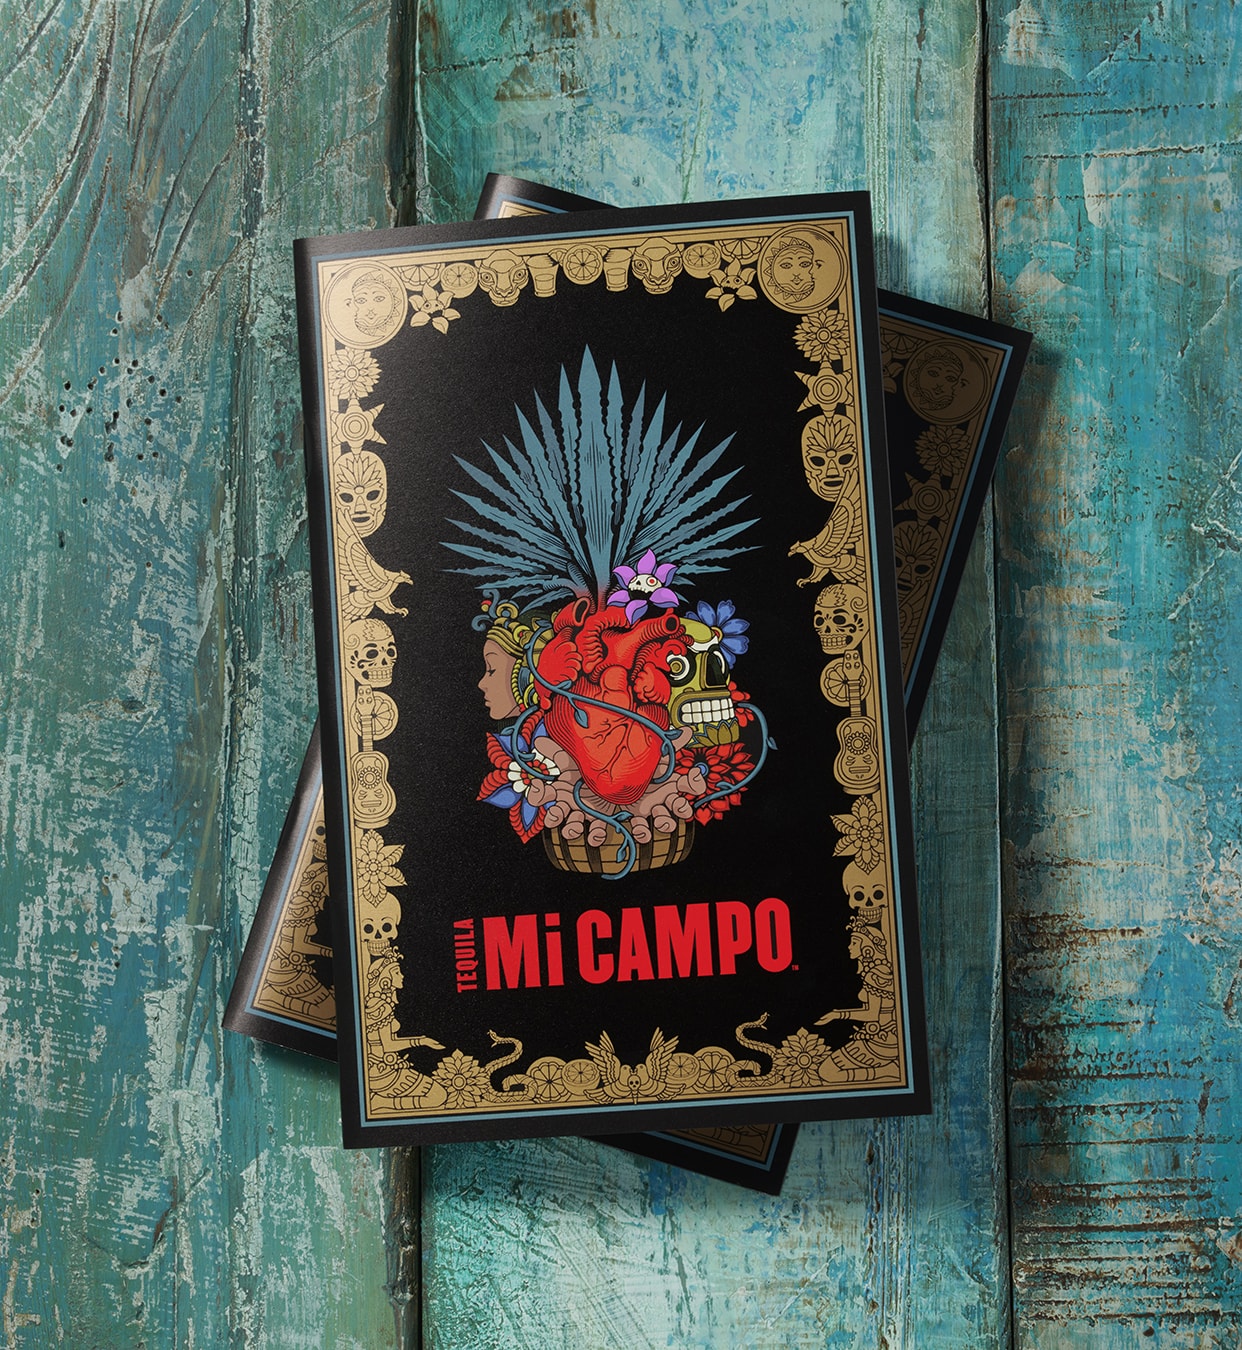 Mi Campo - brand book cover design